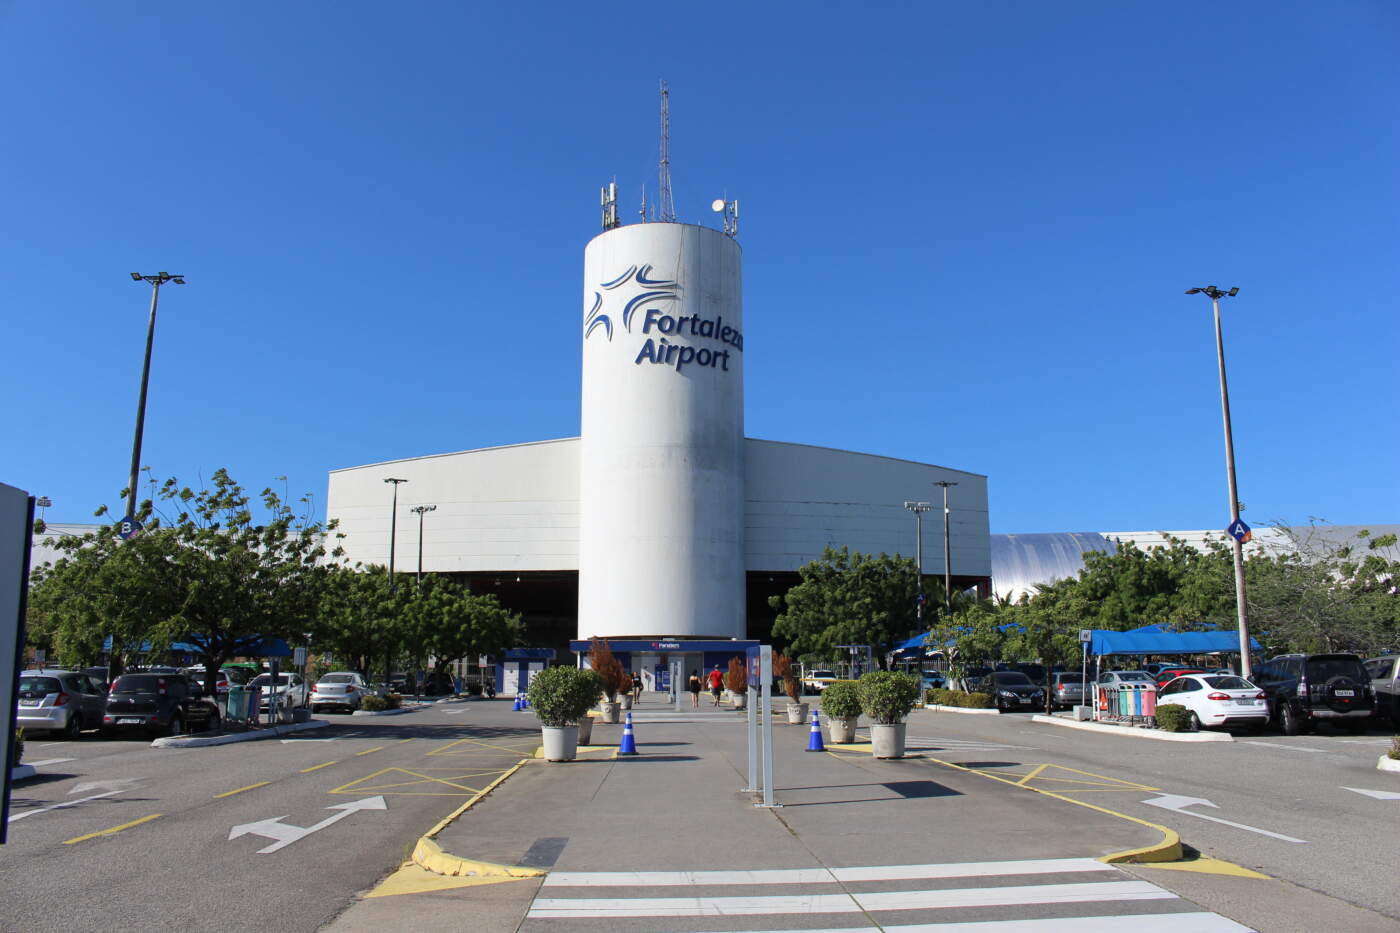 Aeroporto Internacional de Fortaleza é o terceiro mais bem avaliado do país